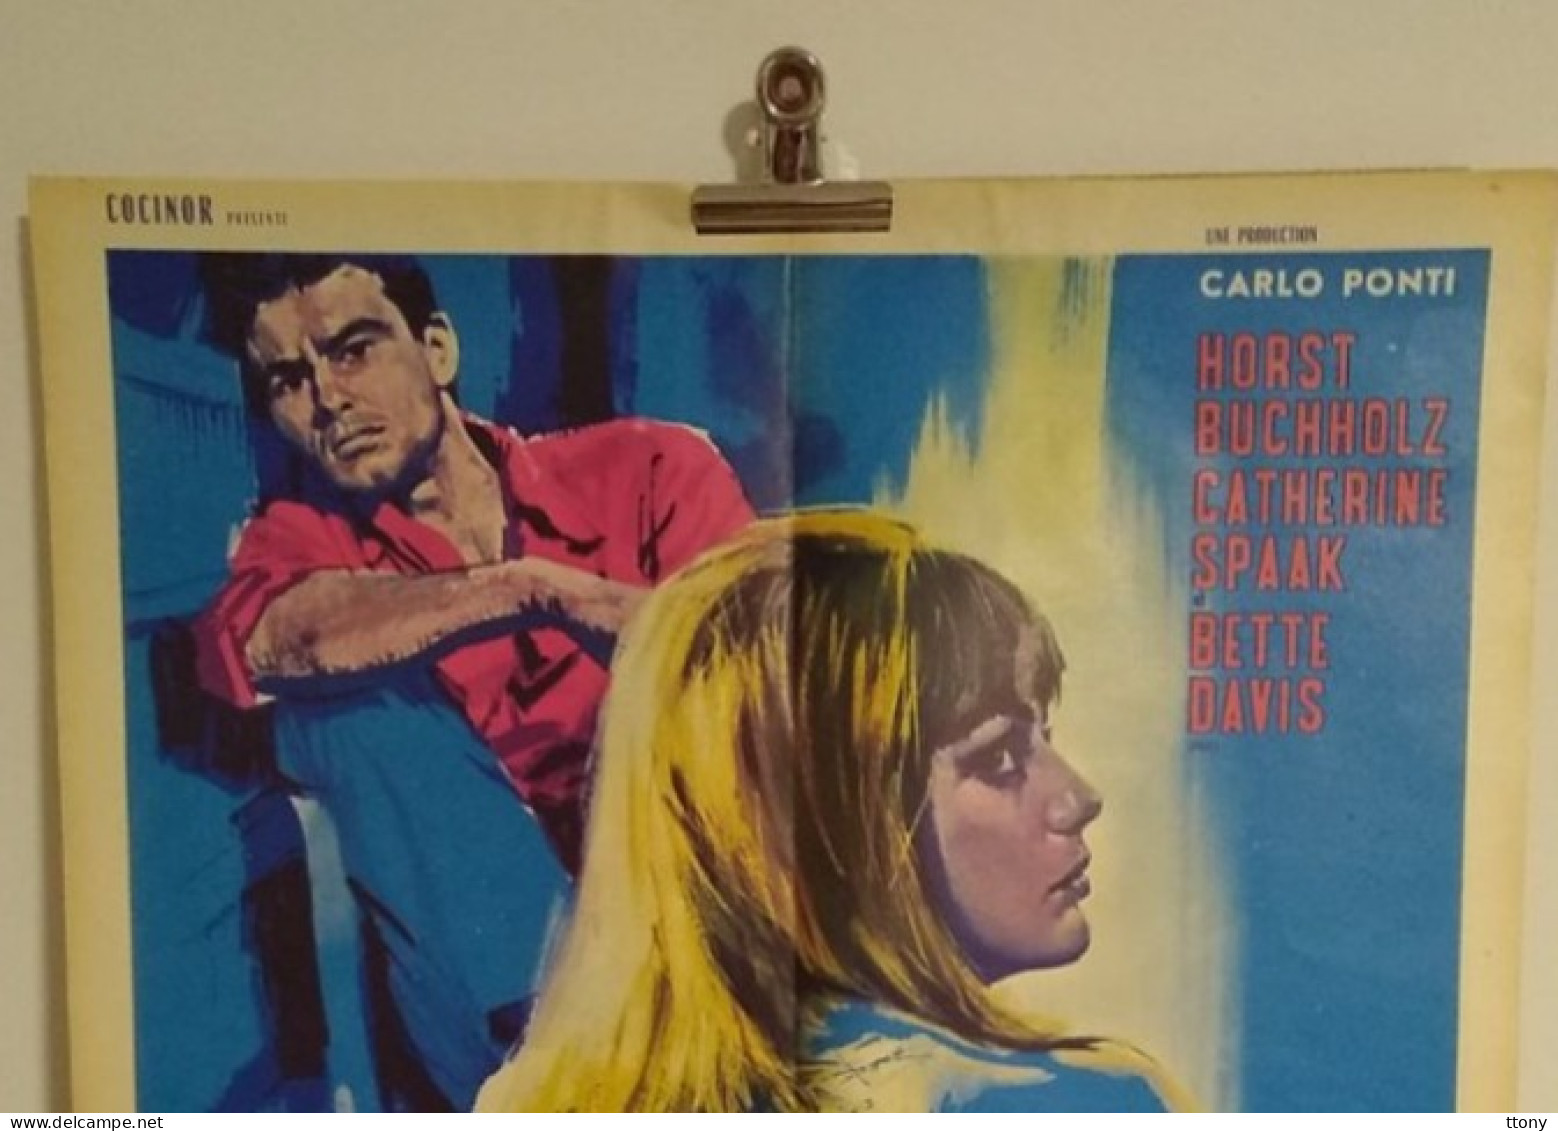 Affiche De Cinéma Pliée Originale L 'Ennui Année 1963 Catherine Spaak  ( 80 Cm X 60 Cm ) - Affiches & Posters